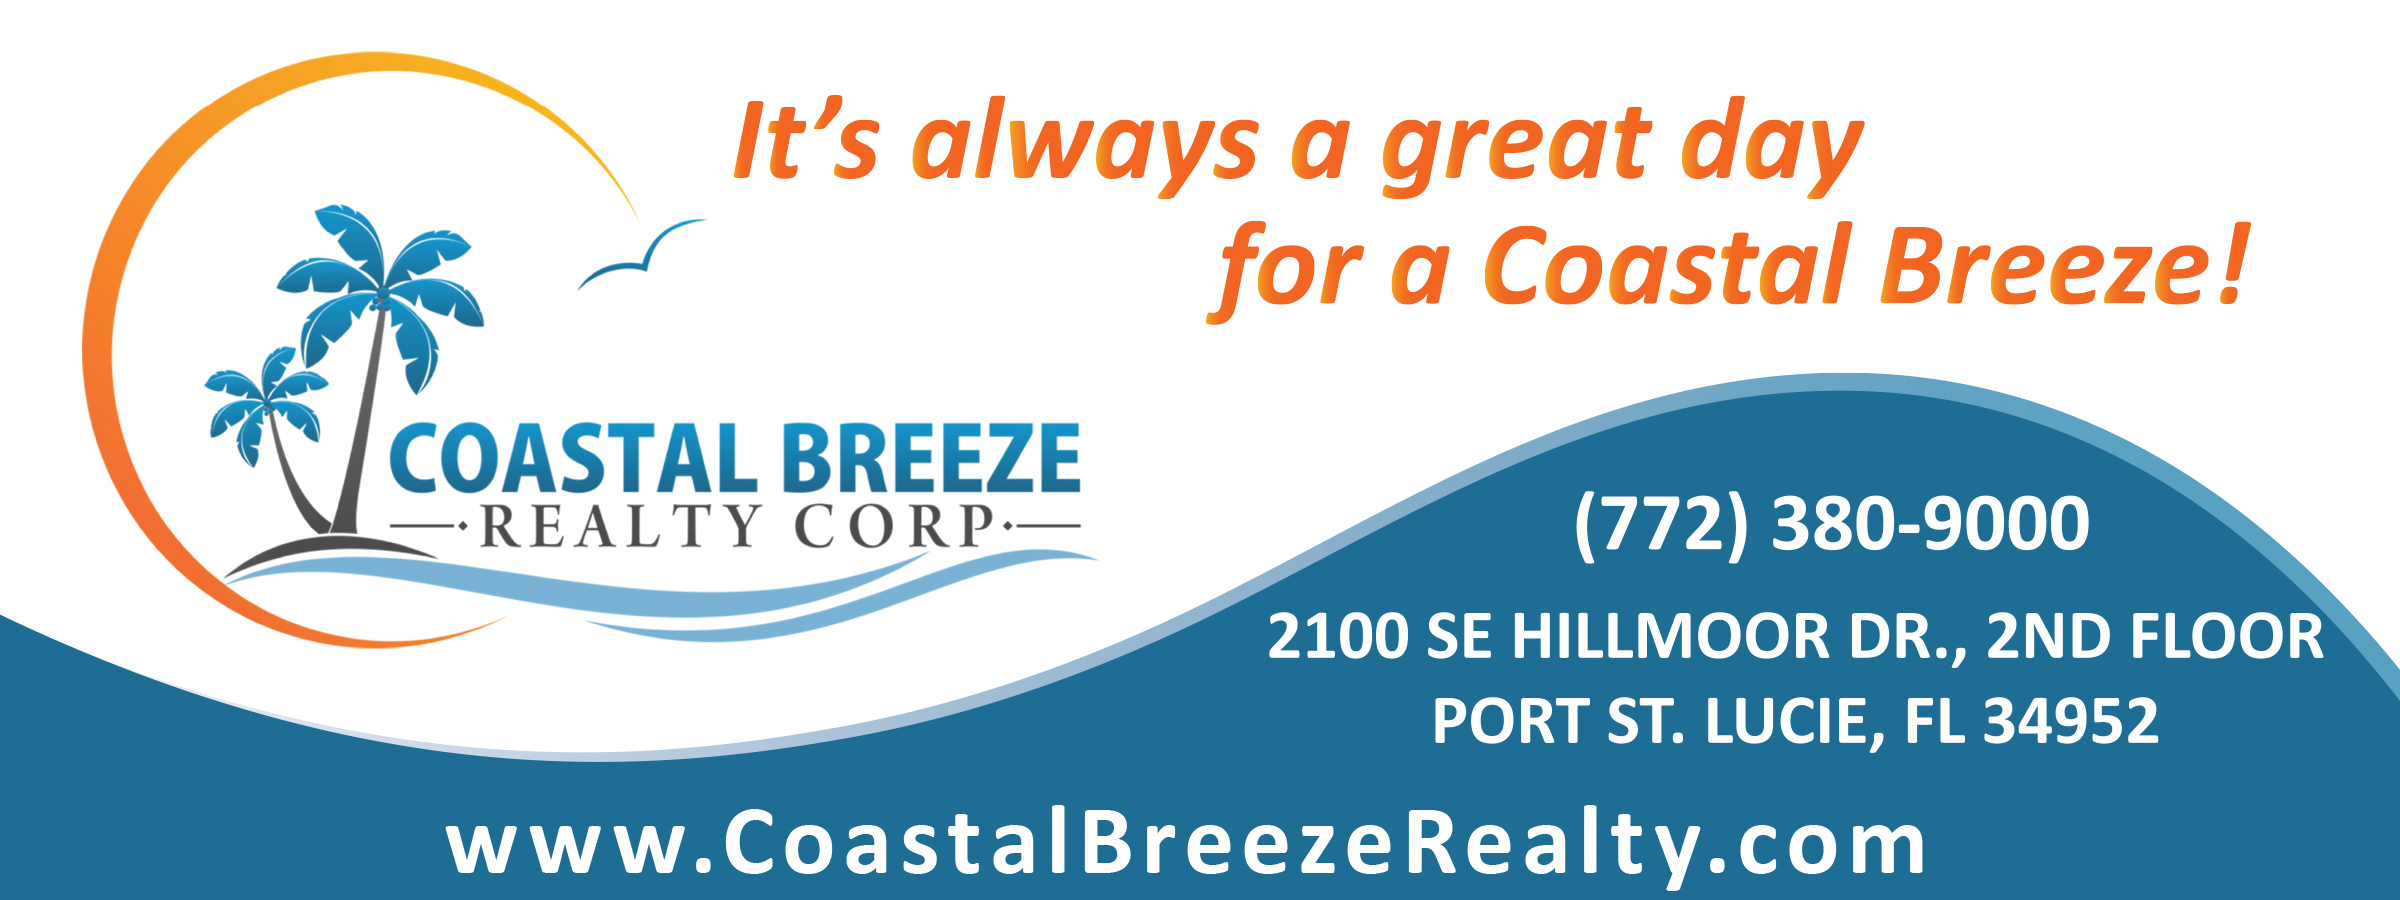 Coastal Breeze Realty Corp. Photo